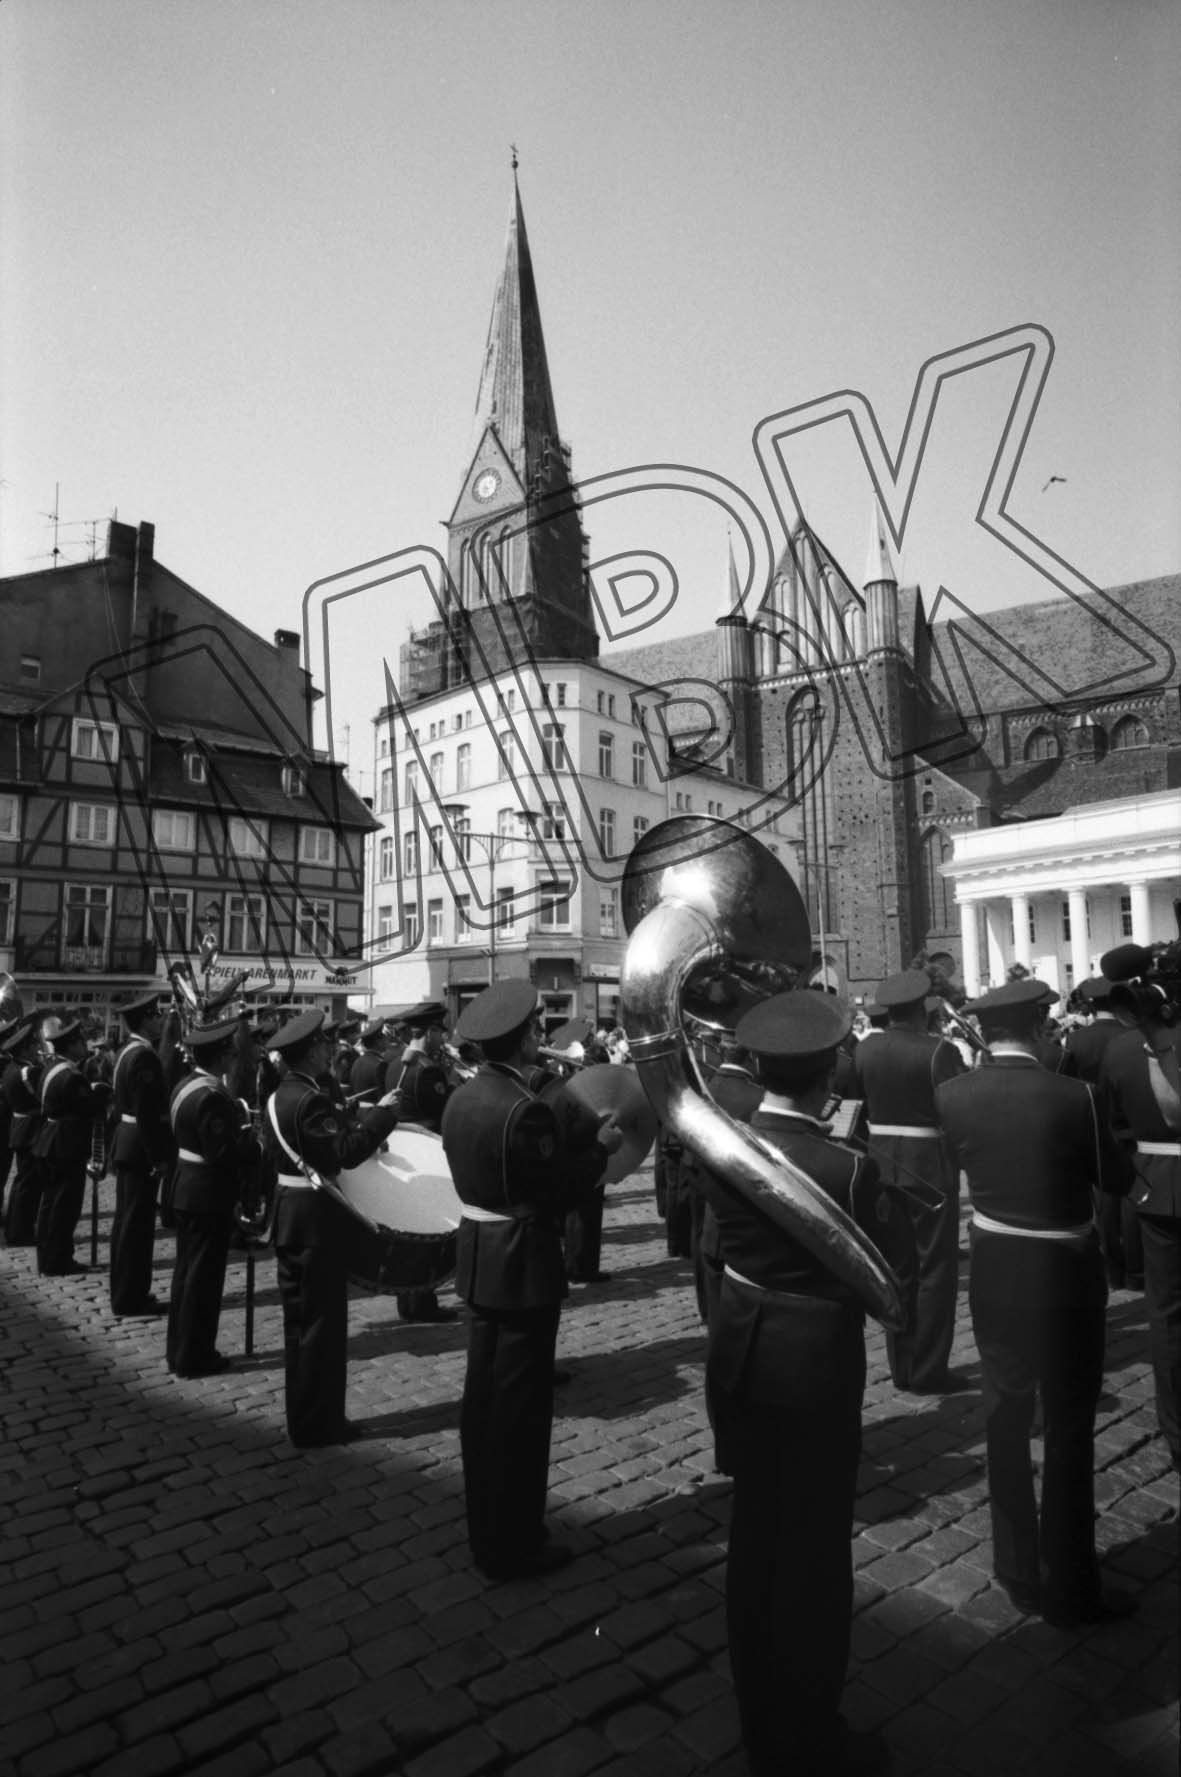 Fotografie: Abschiedsfest im Zentrum von Schwerin, 28. April 1993 (Museum Berlin-Karlshorst RR-P)